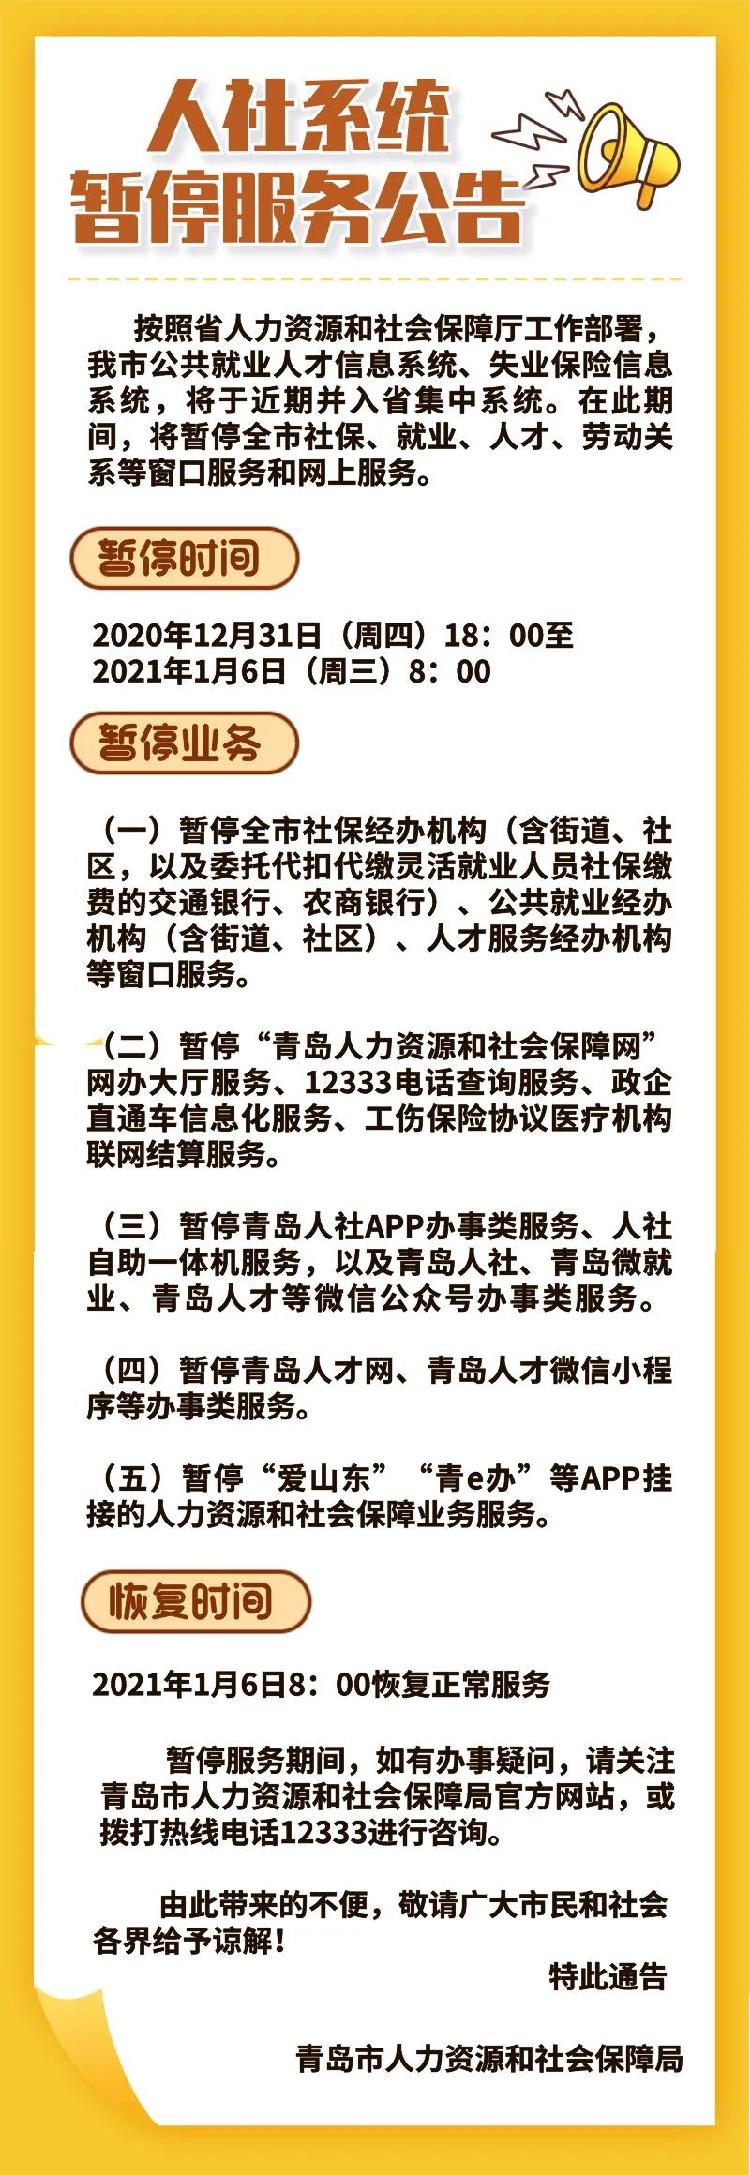 青岛市人社局发布人社系统系统暂停服务的公告